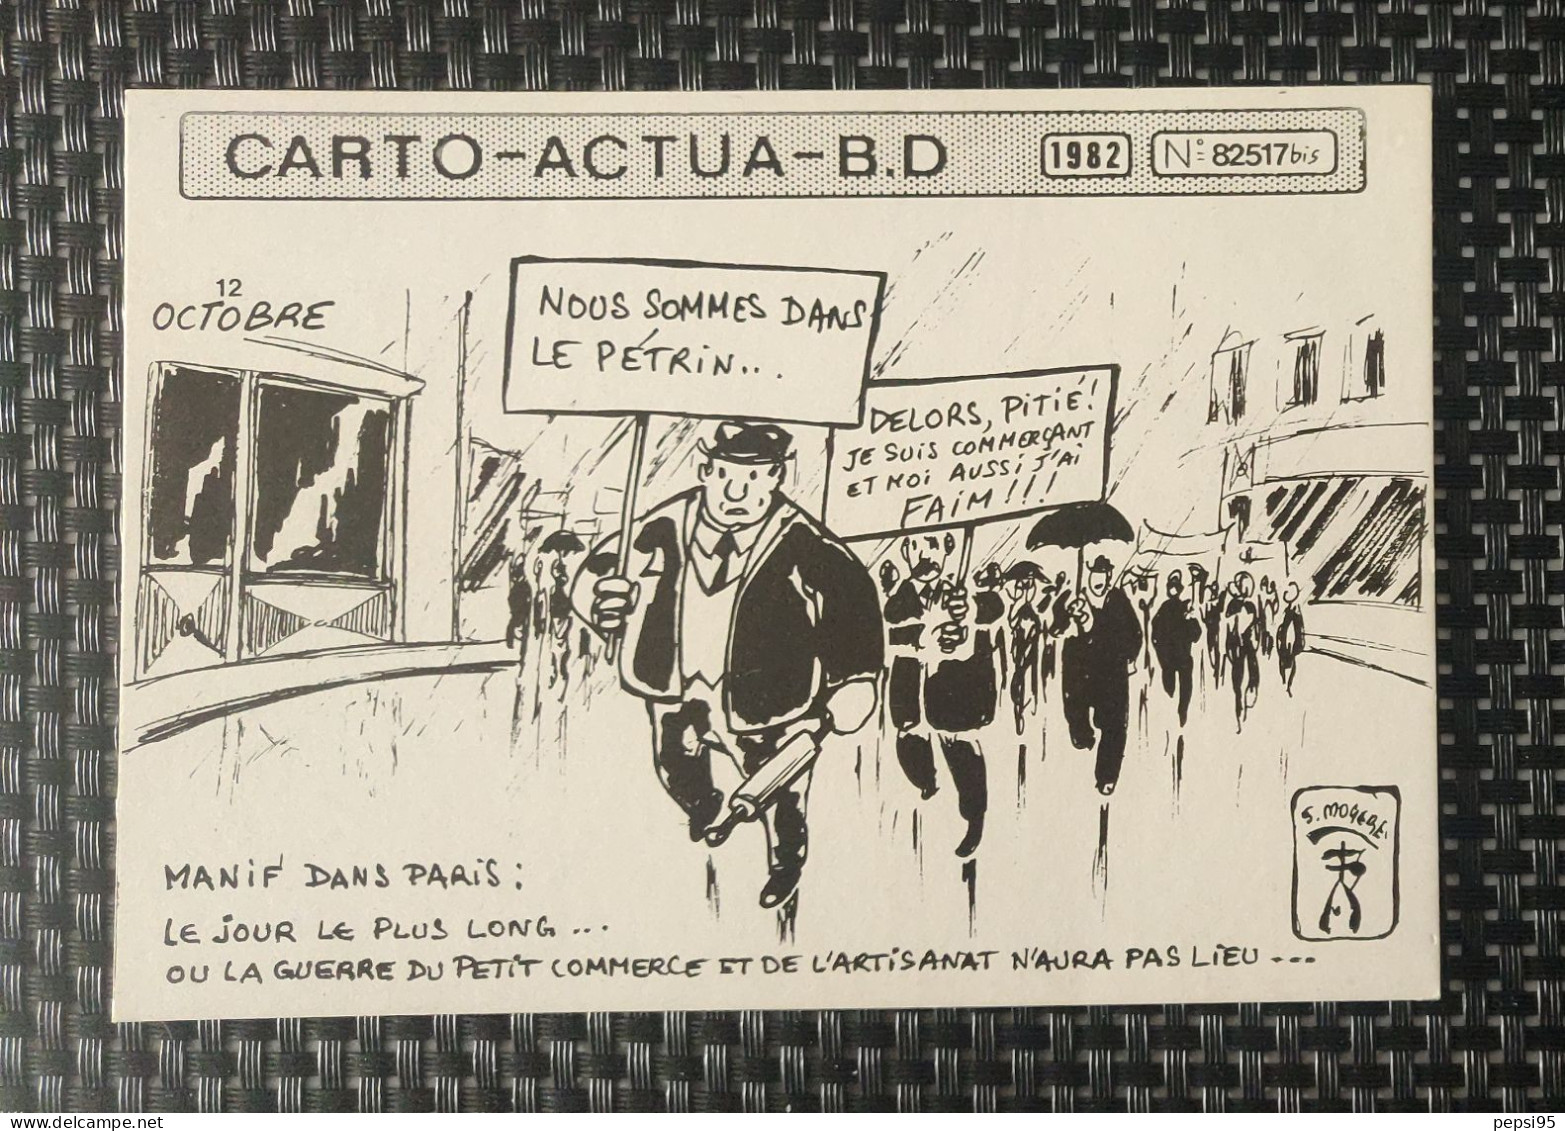 (CPI03) Carte Postale CARTO ACTUA B D N° 82517bis - 1982 - S. MOGERE - Nous Sommes Dans Le Pétrin - Fumetti